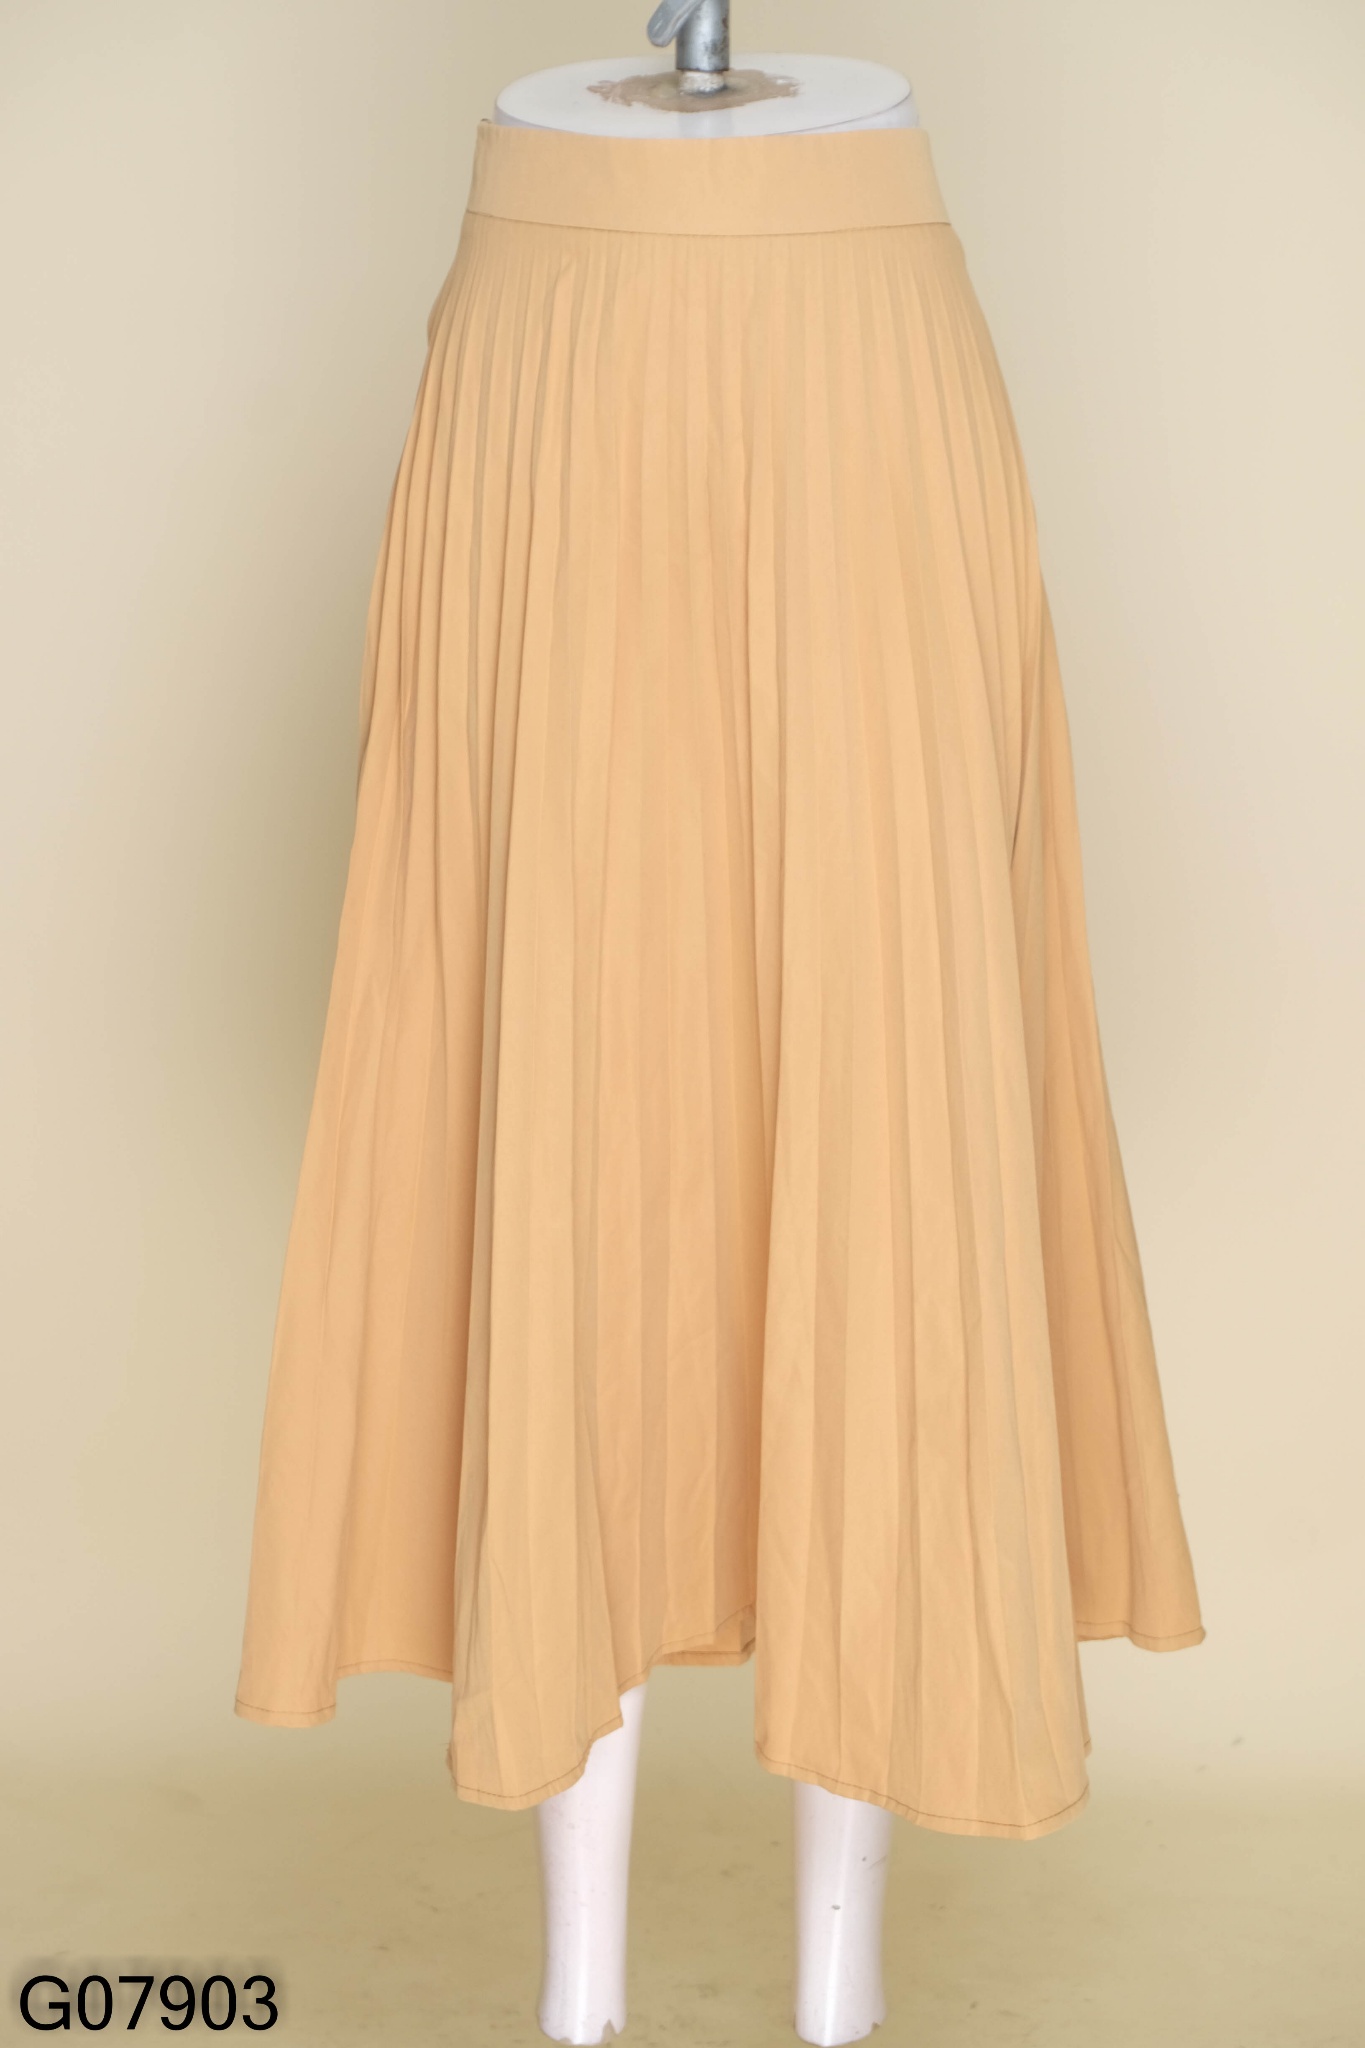 Chân váy xếp ly dài kèm đai Quảng Châu hàng đẹp Loại 1 | Lazada.vn